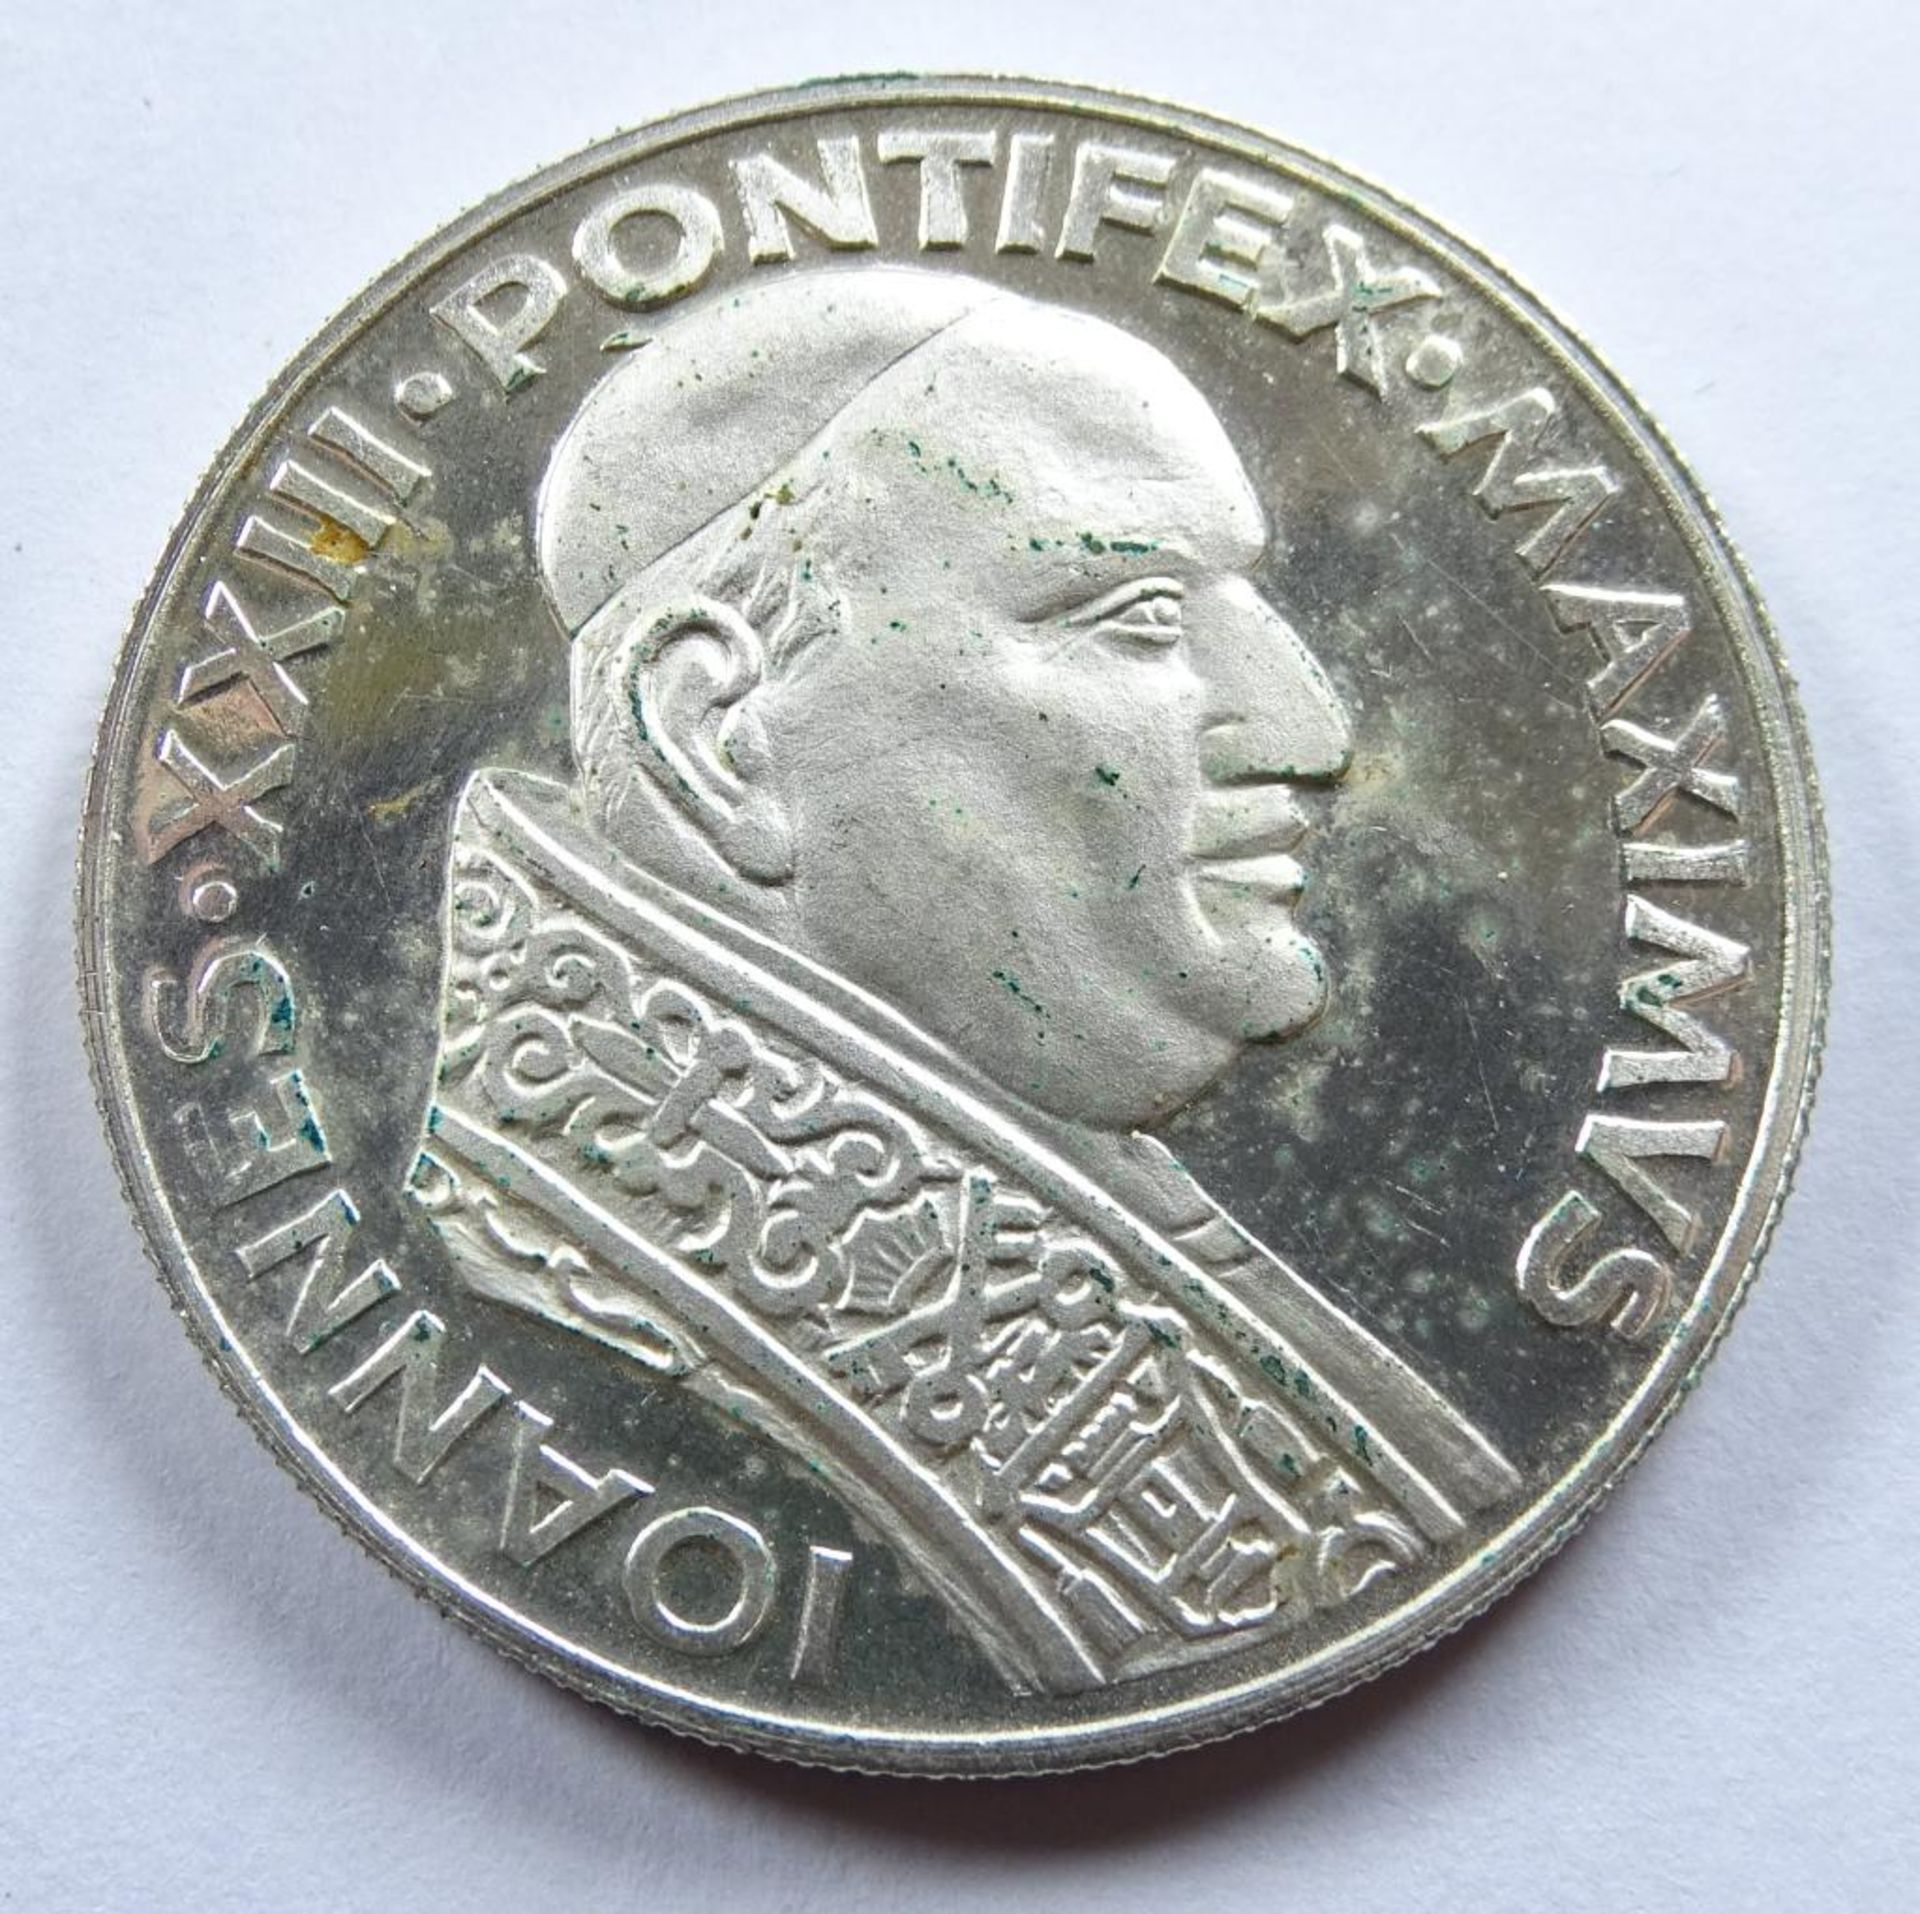 Medaille,Oboedienta et Pax,1958-1963,Ioannes XXIII,Pontifex Maximus,versilbert - Bild 2 aus 2